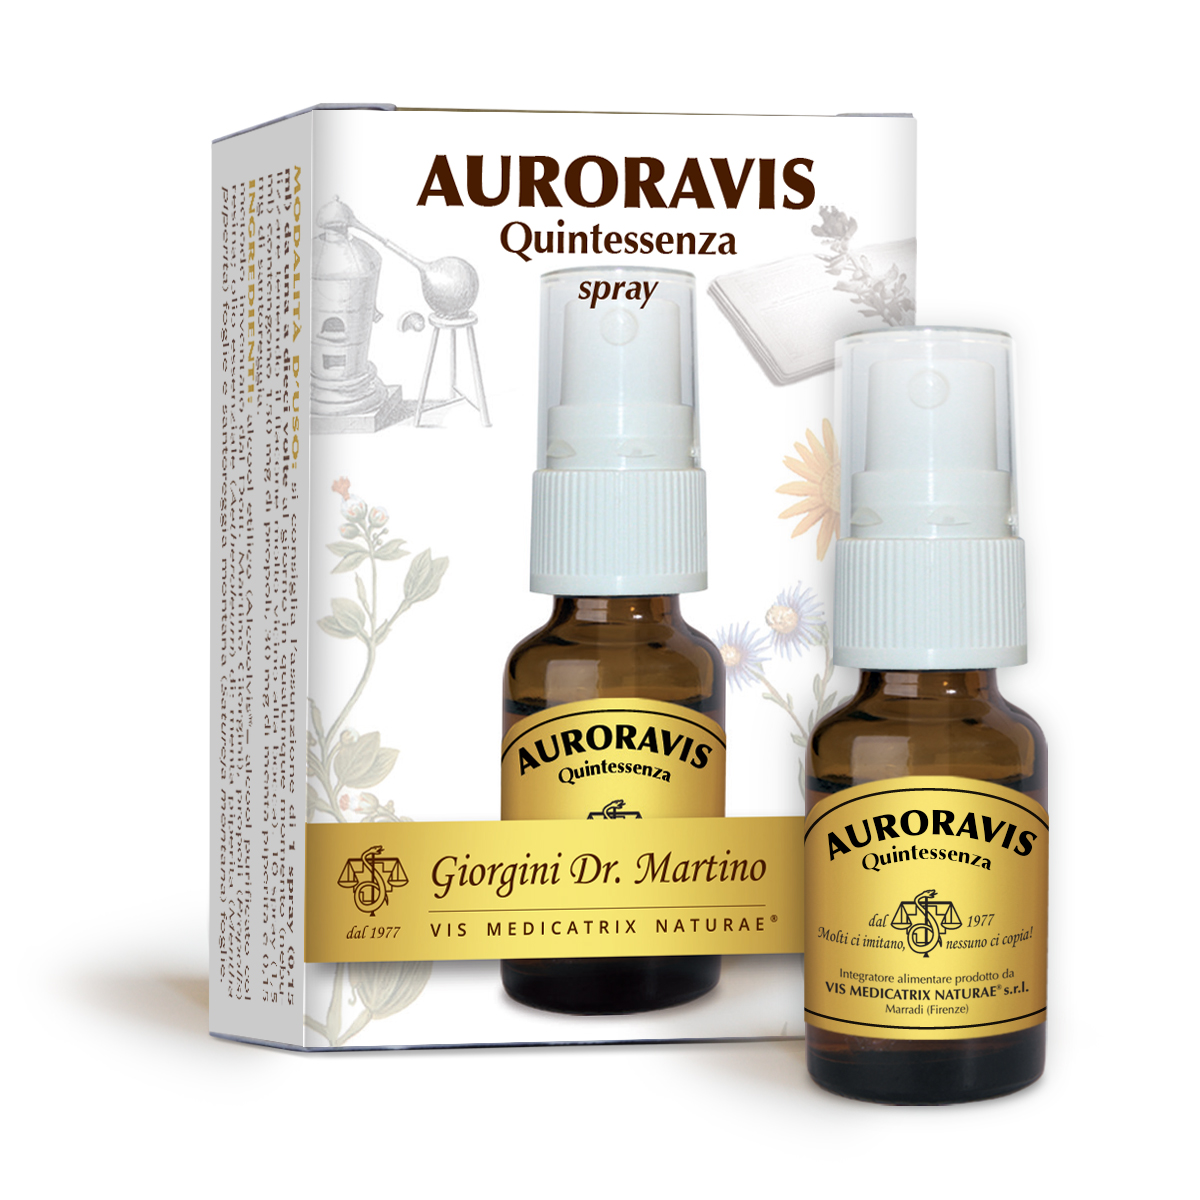 AURORAVIS Quintessenza 15 ml spray